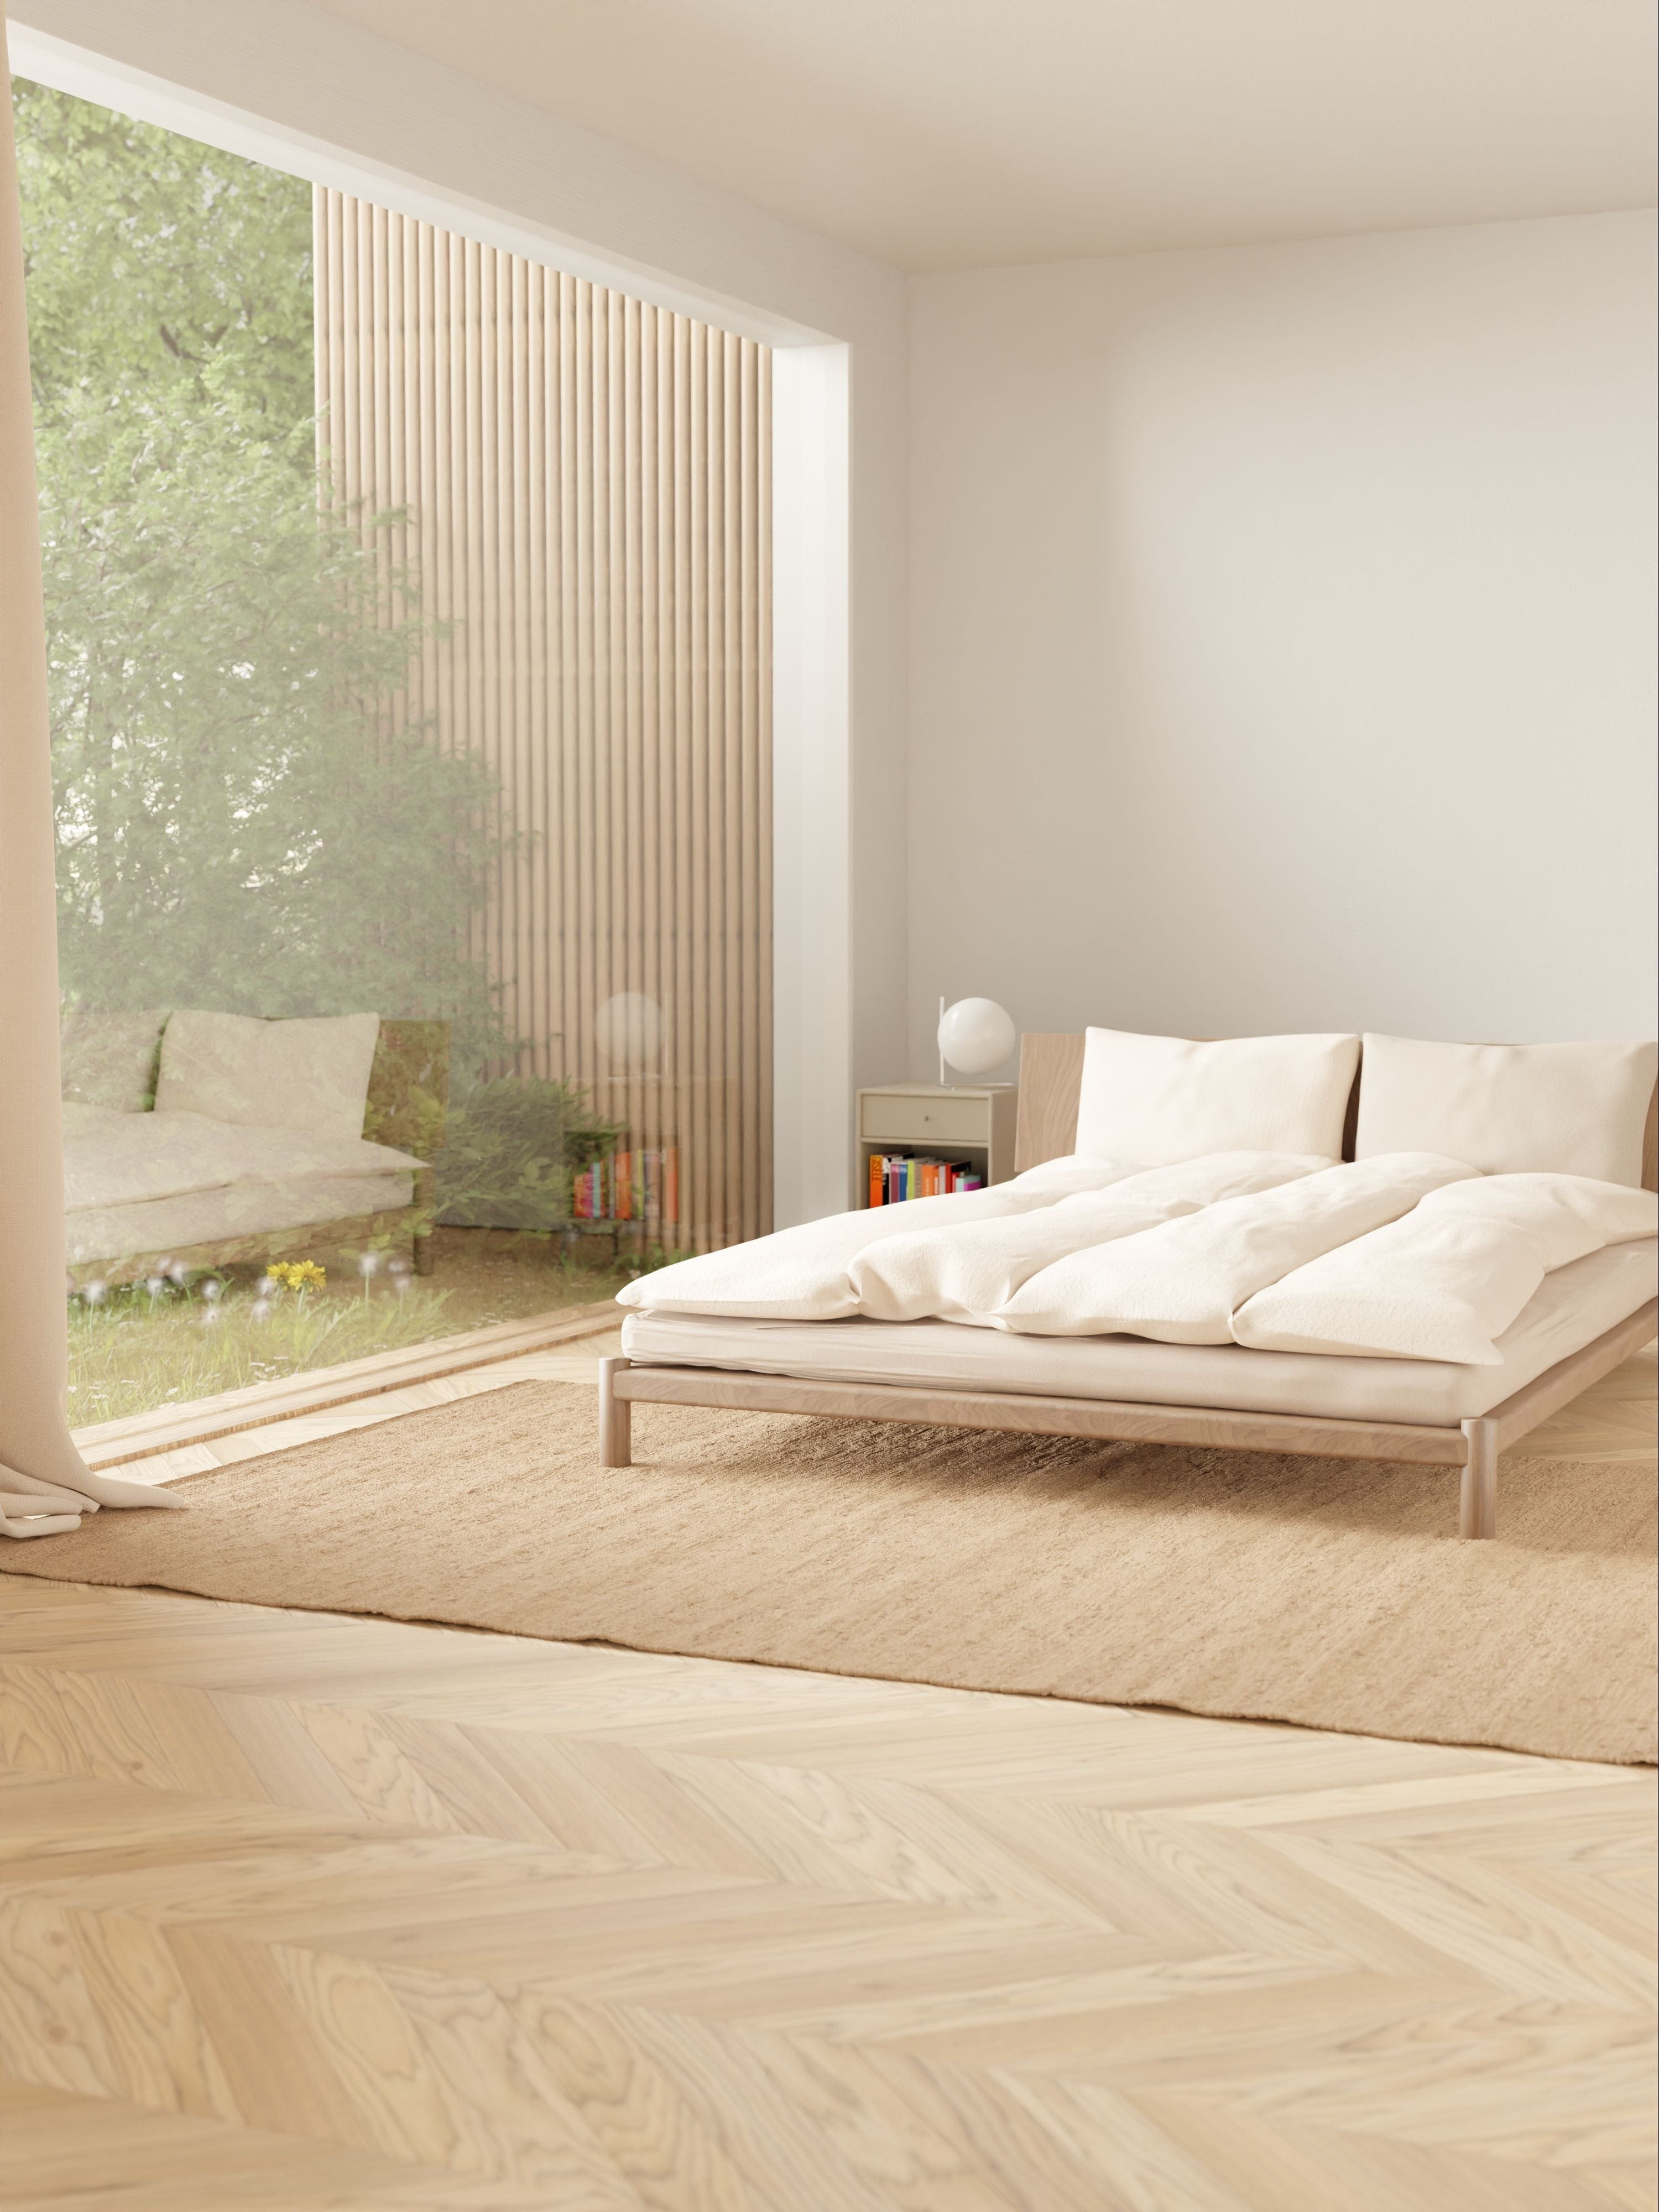 Rug Solid Katoenen tapijt 140 x 200 cm, nougat